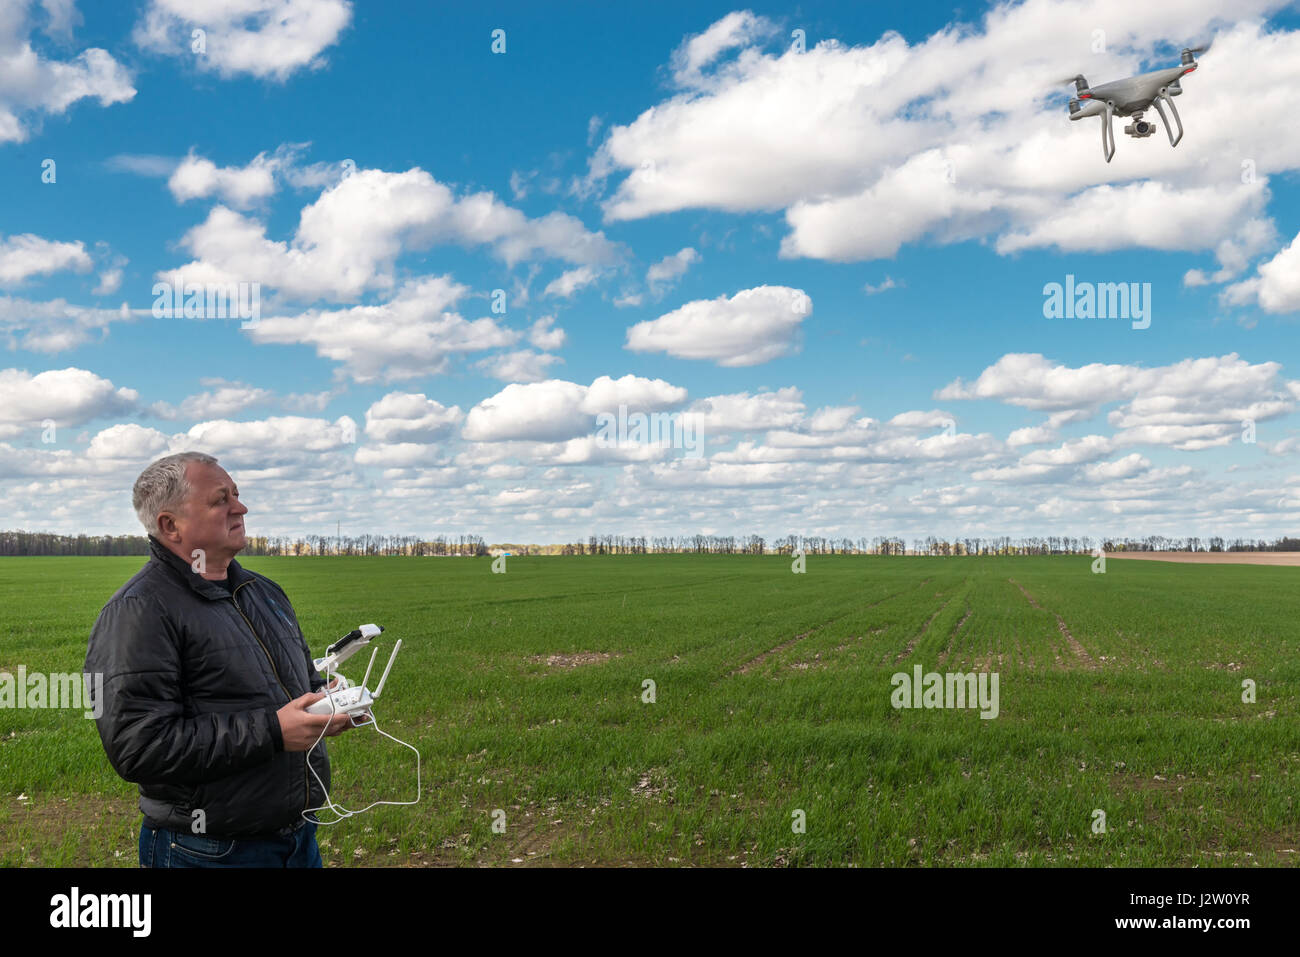 L'uomo gioca con il drone in corrispondenza del campo verde Foto Stock